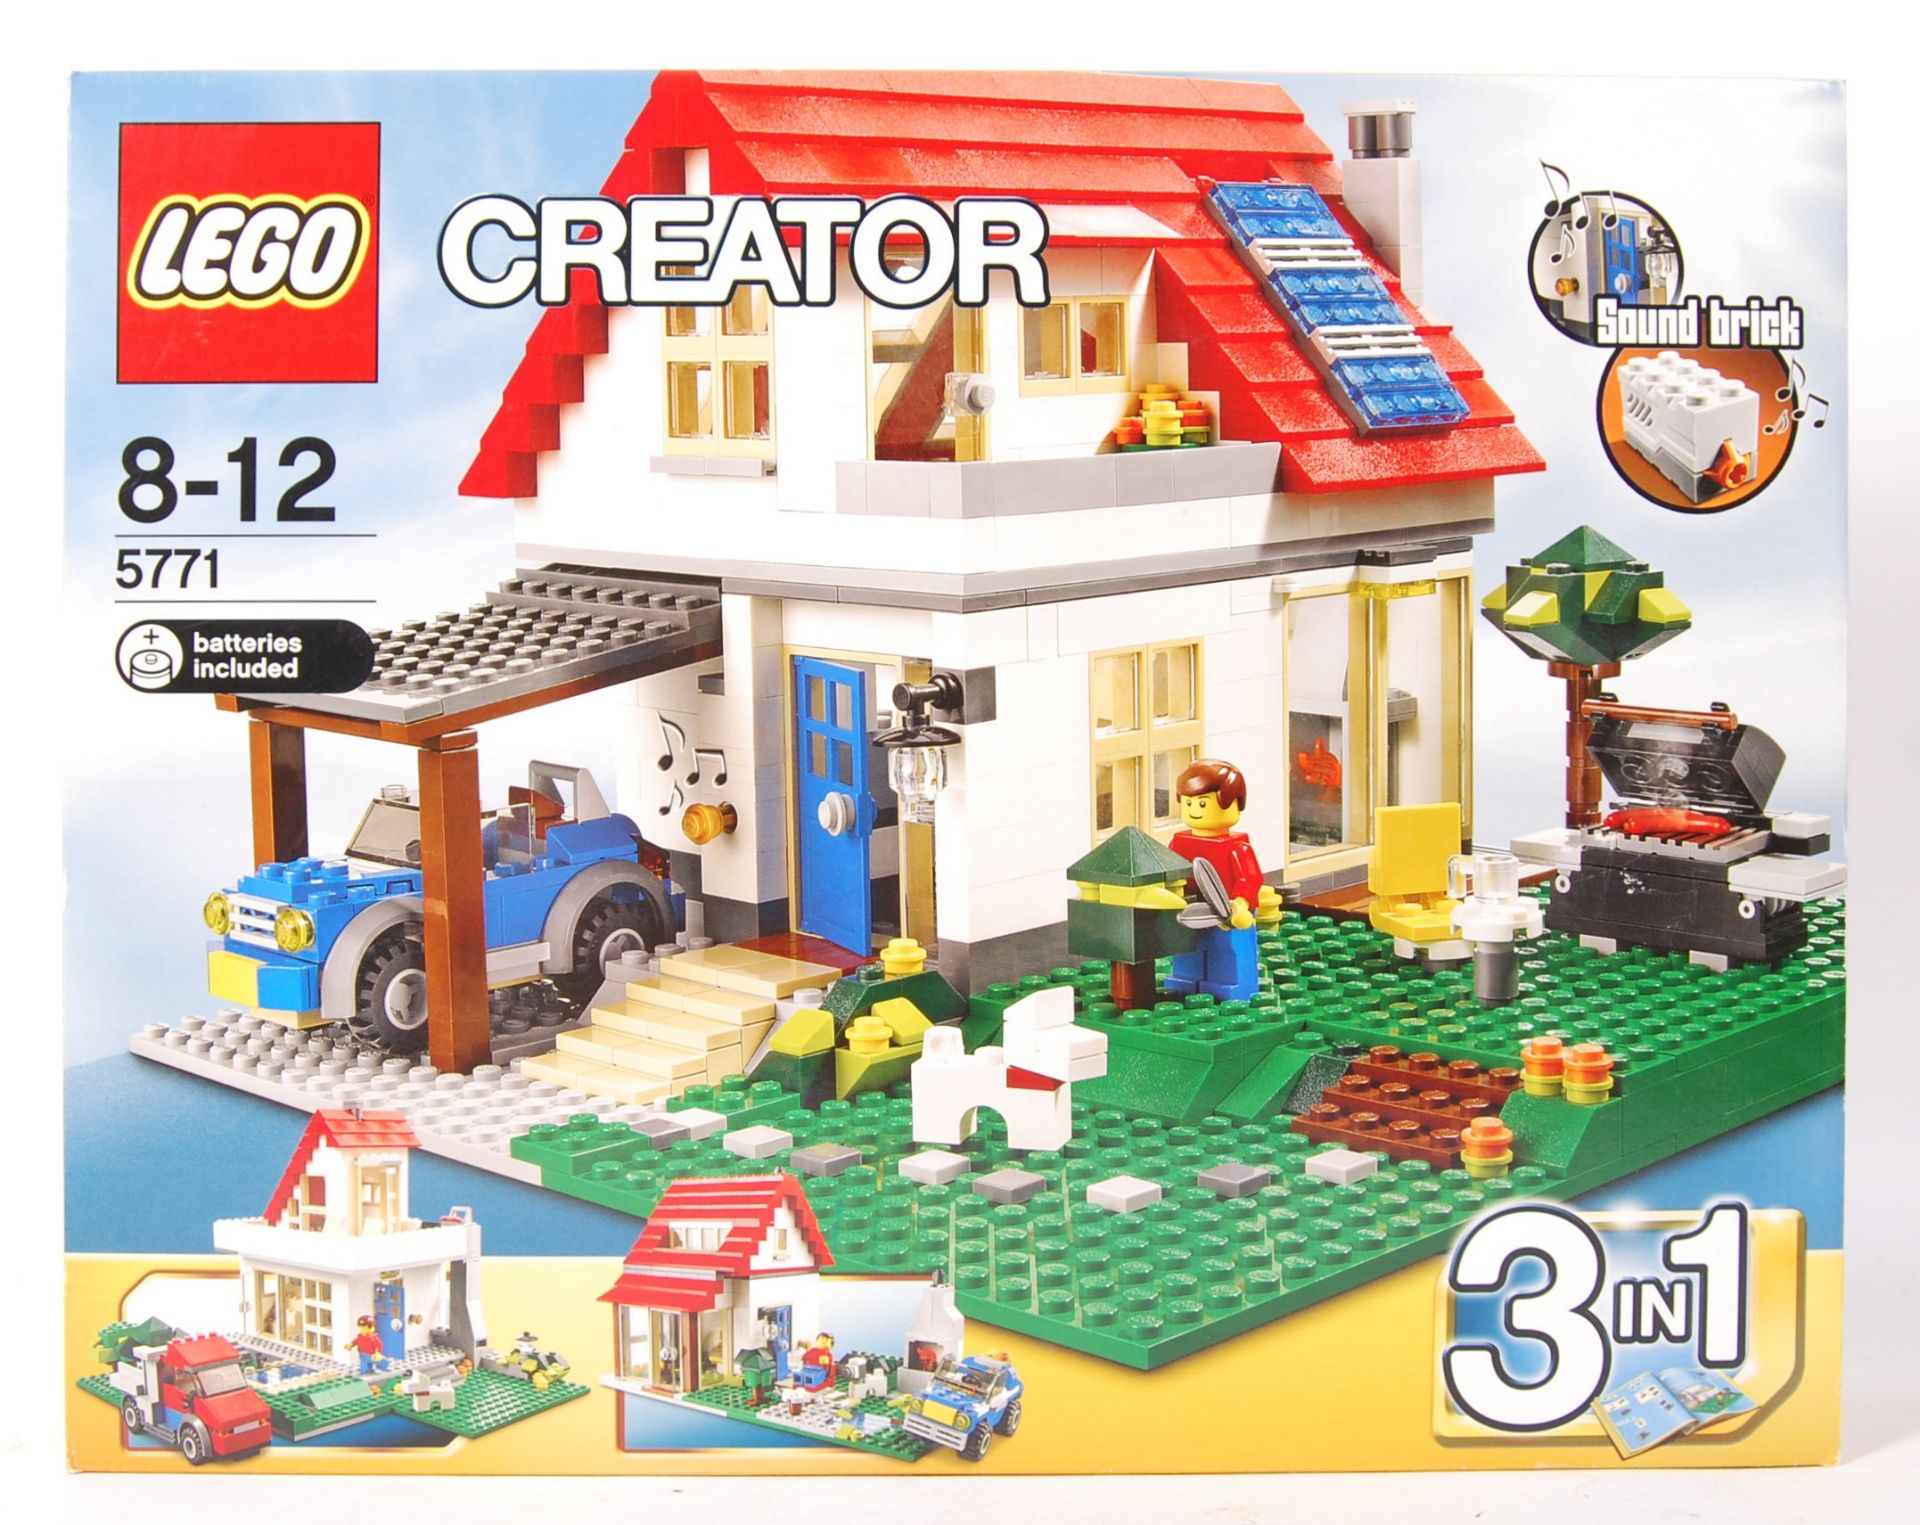 LEGO CREATOR 5771 ' HILLSIDE HOUSE ' BOXED SET